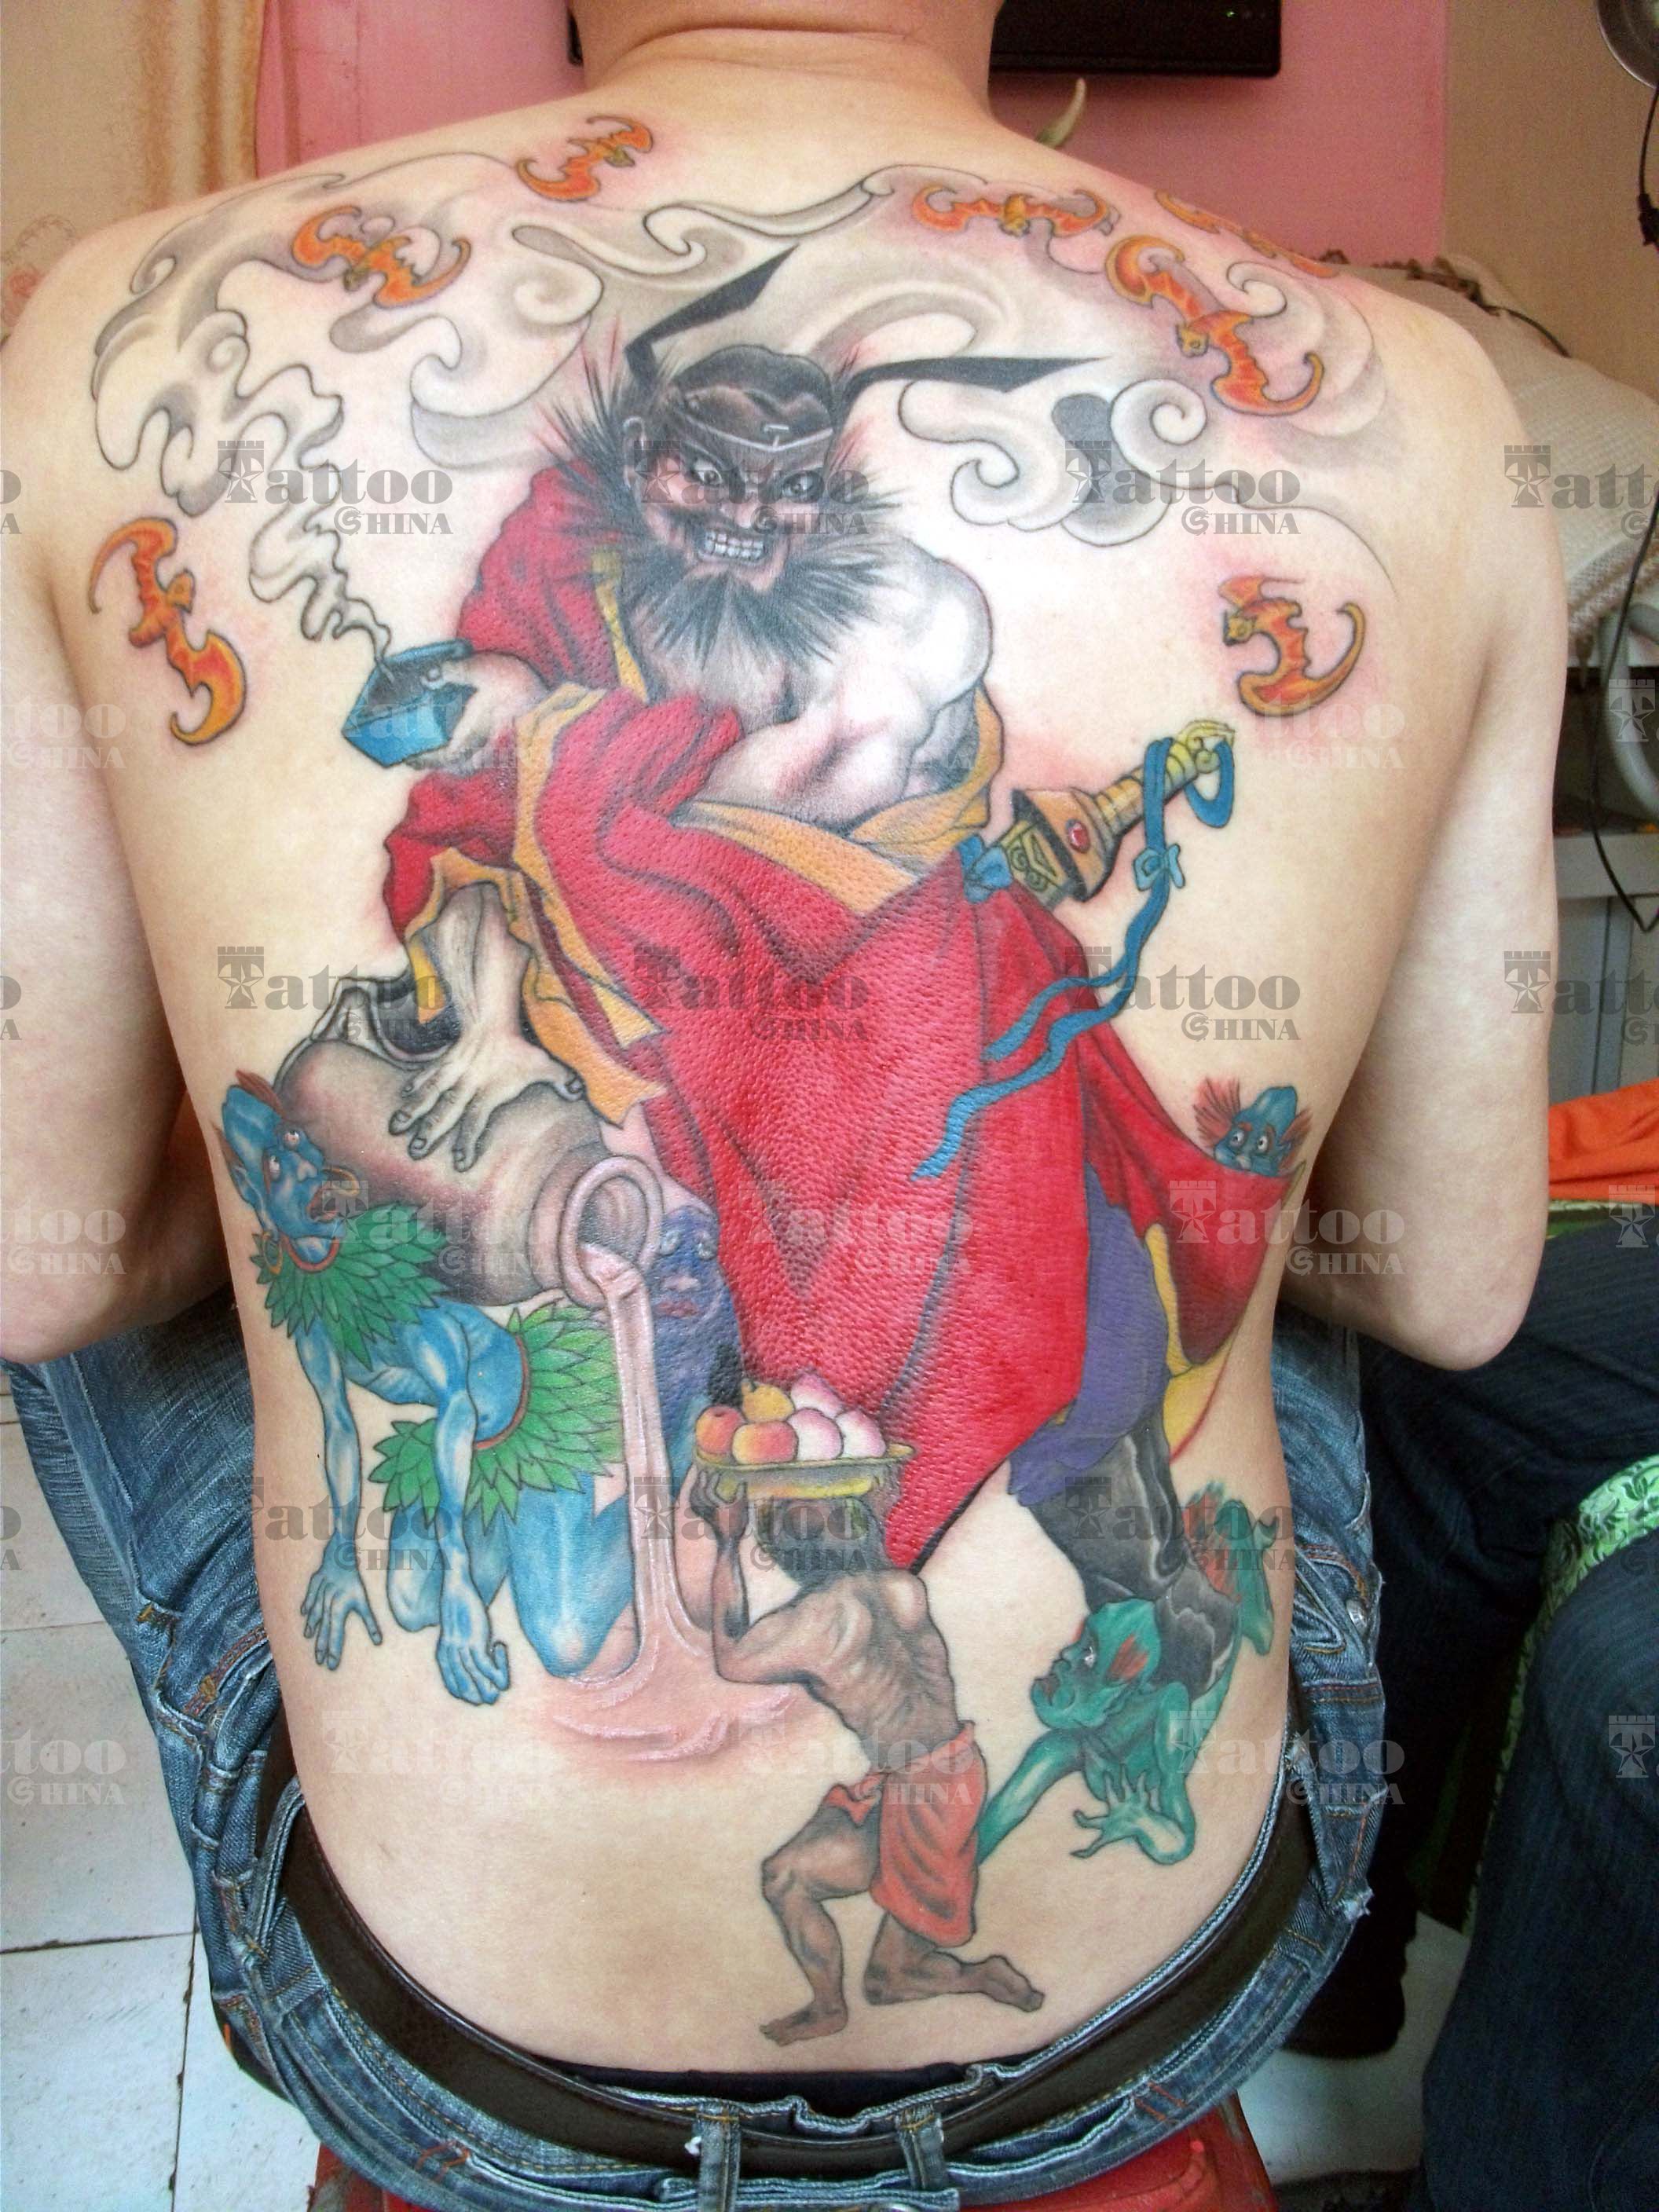 全球最有名的纹身狂人将自己活生生变成了“怪物”-搜狐大视野-搜狐新闻